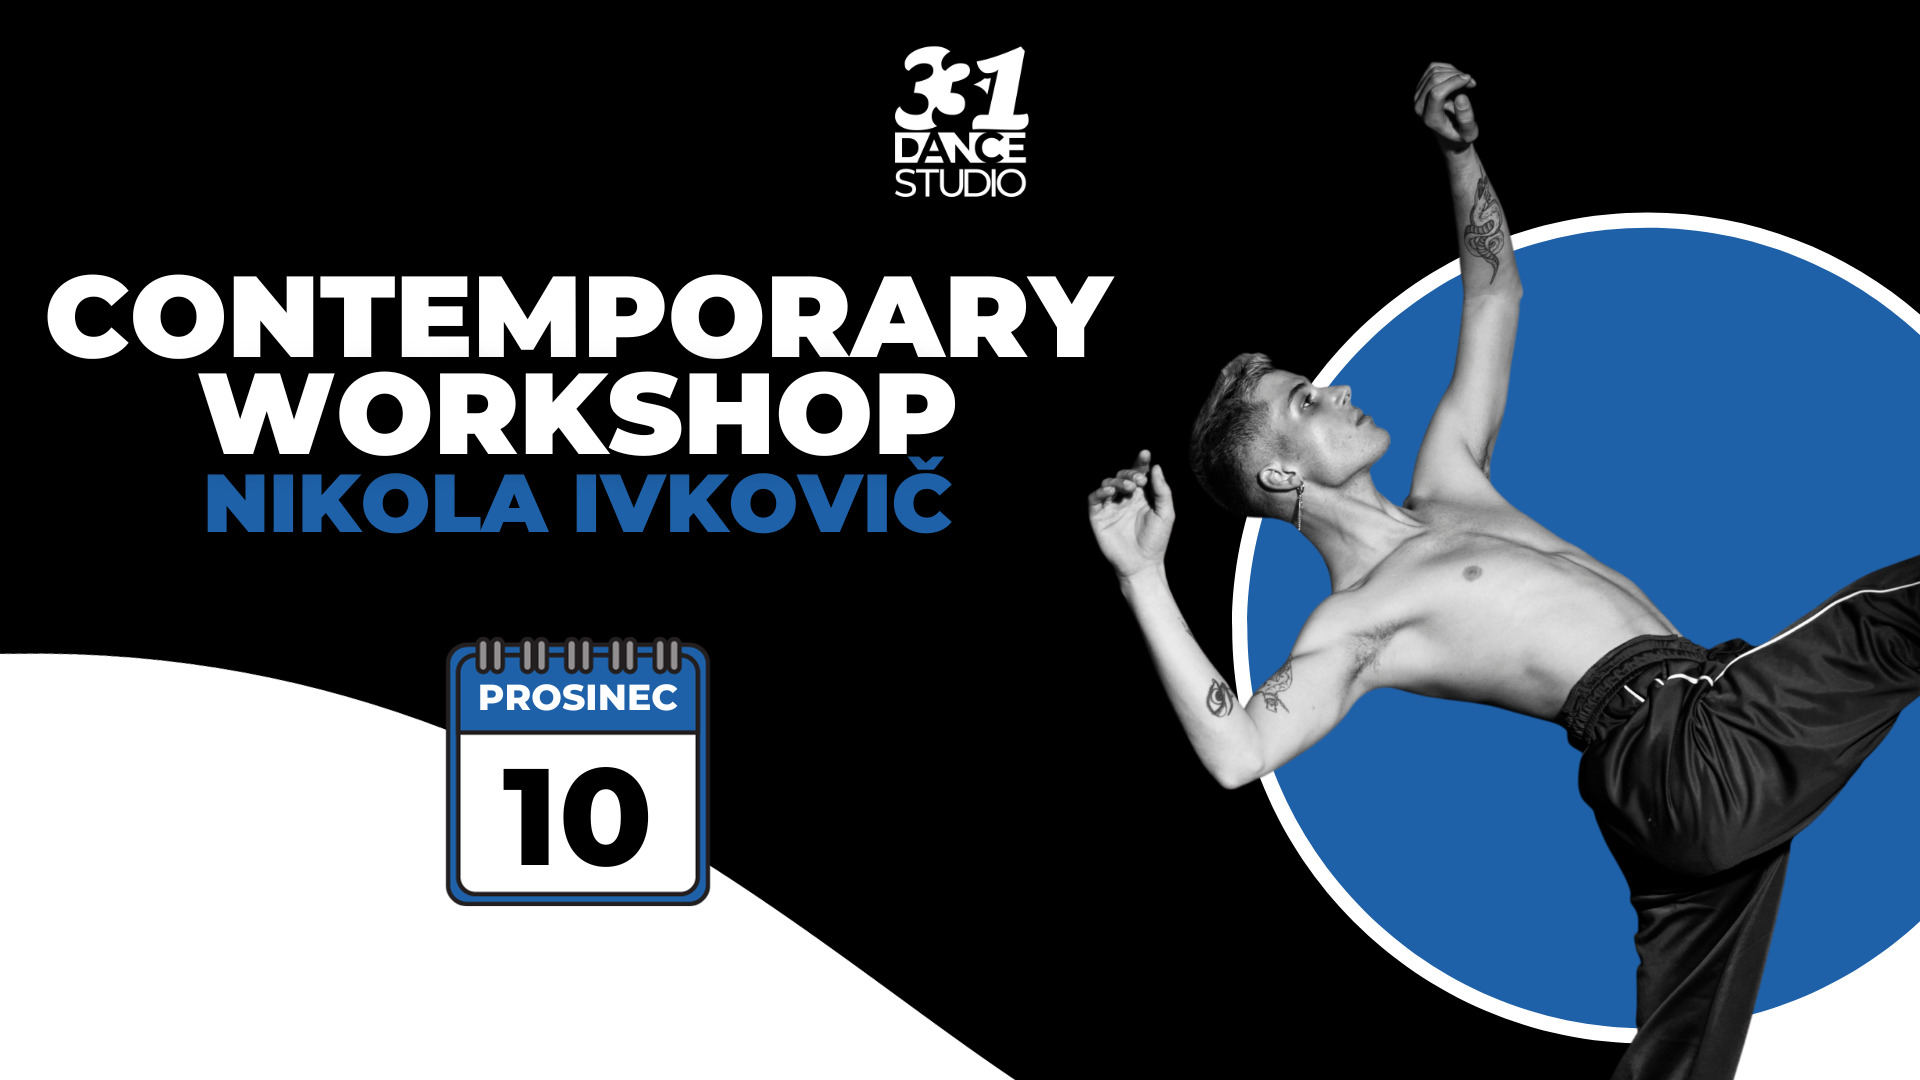 Contemporary Dance Workshop | Nikola Ivkovič | 331 Dance Studio Olomouc